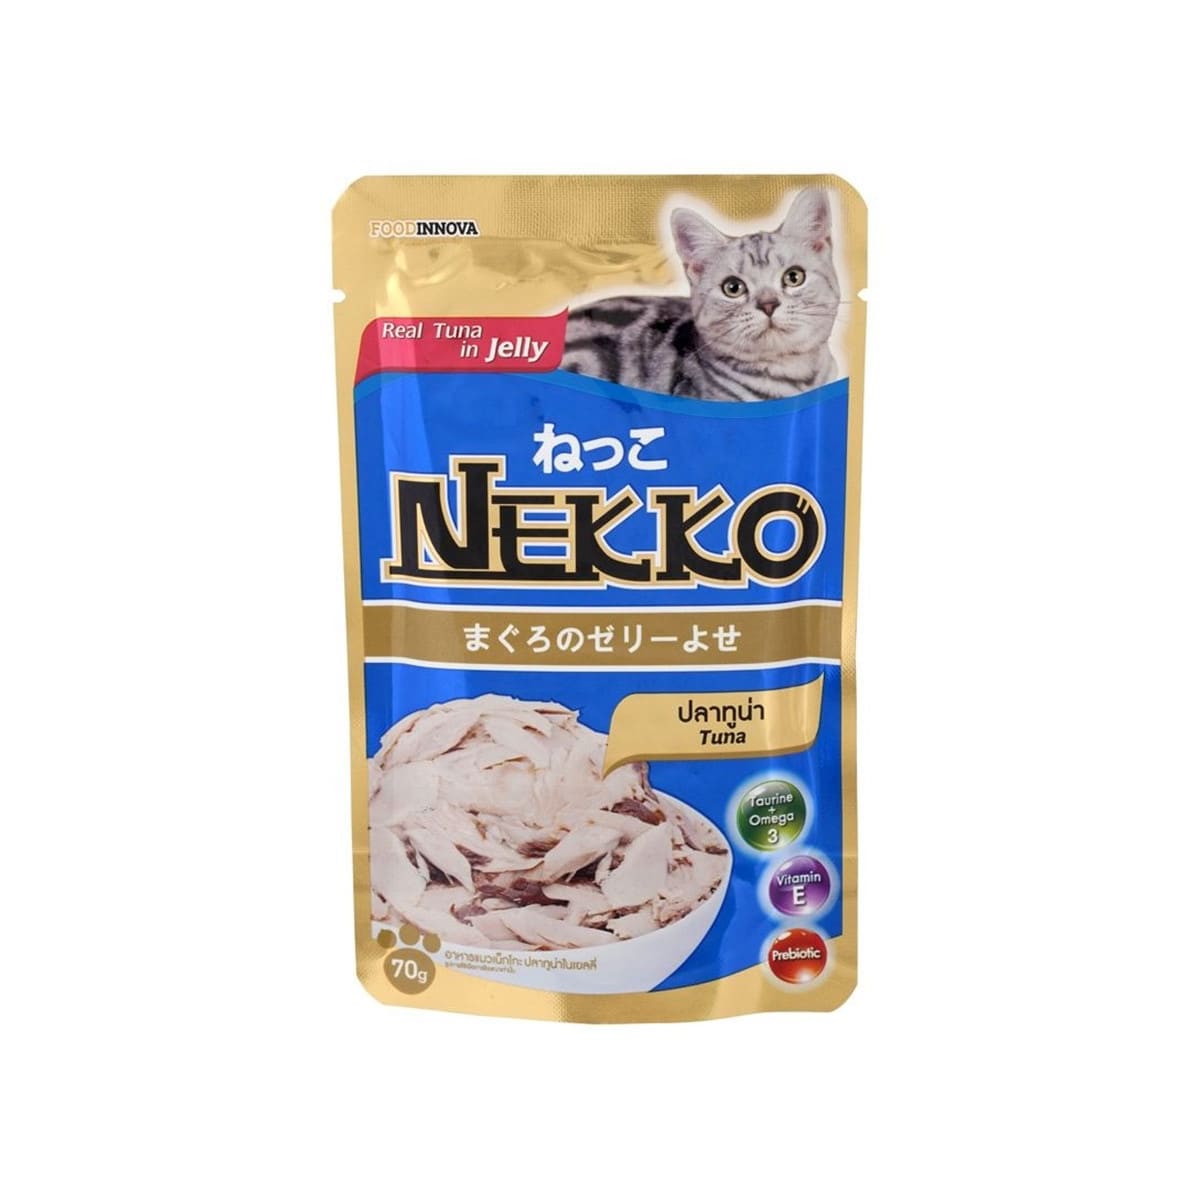 Nekko เน็กโกะ อาหารเปียก สำหรับแมว รสปลาทูน่าในเจลลี่ 70 g_1